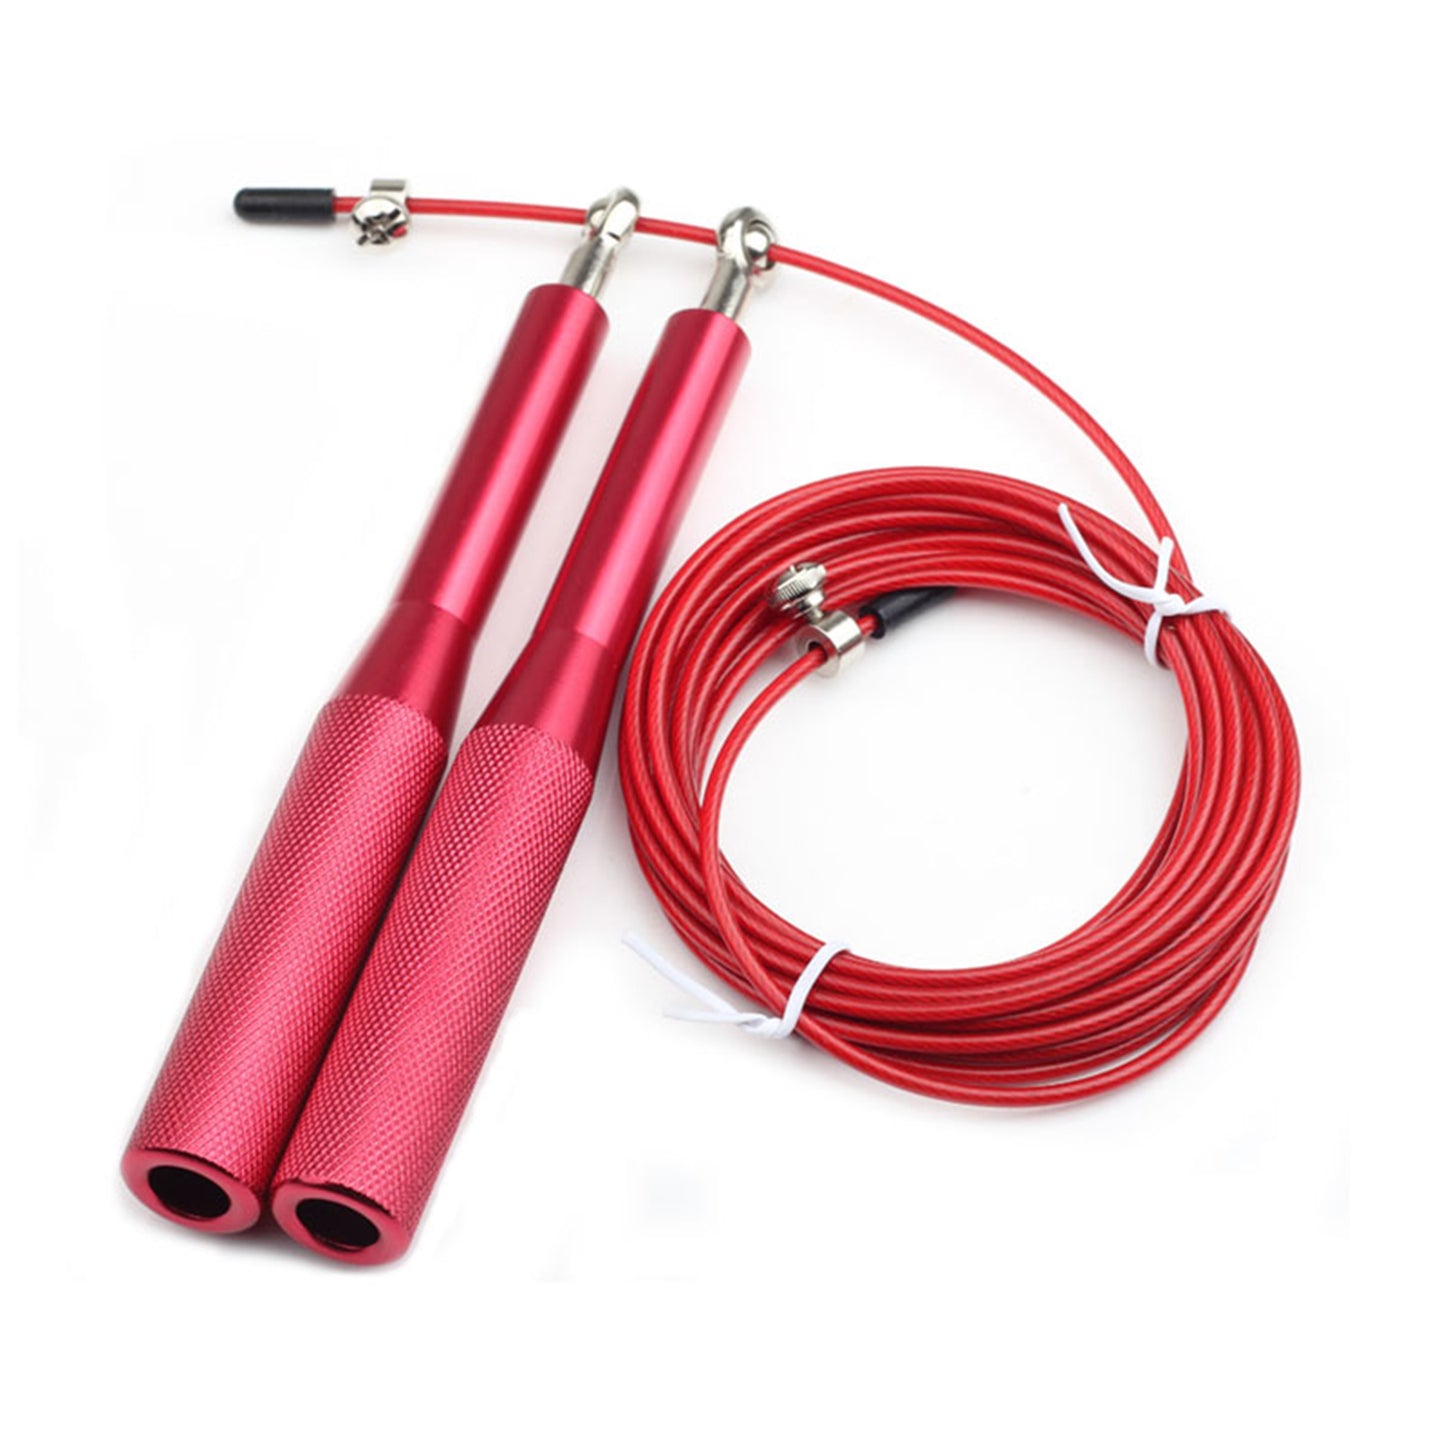 حبل نط من المعدن - طول قابل للتعديل بمقبض مائل - للكارديو و اللياقة البدنية - لون احمر